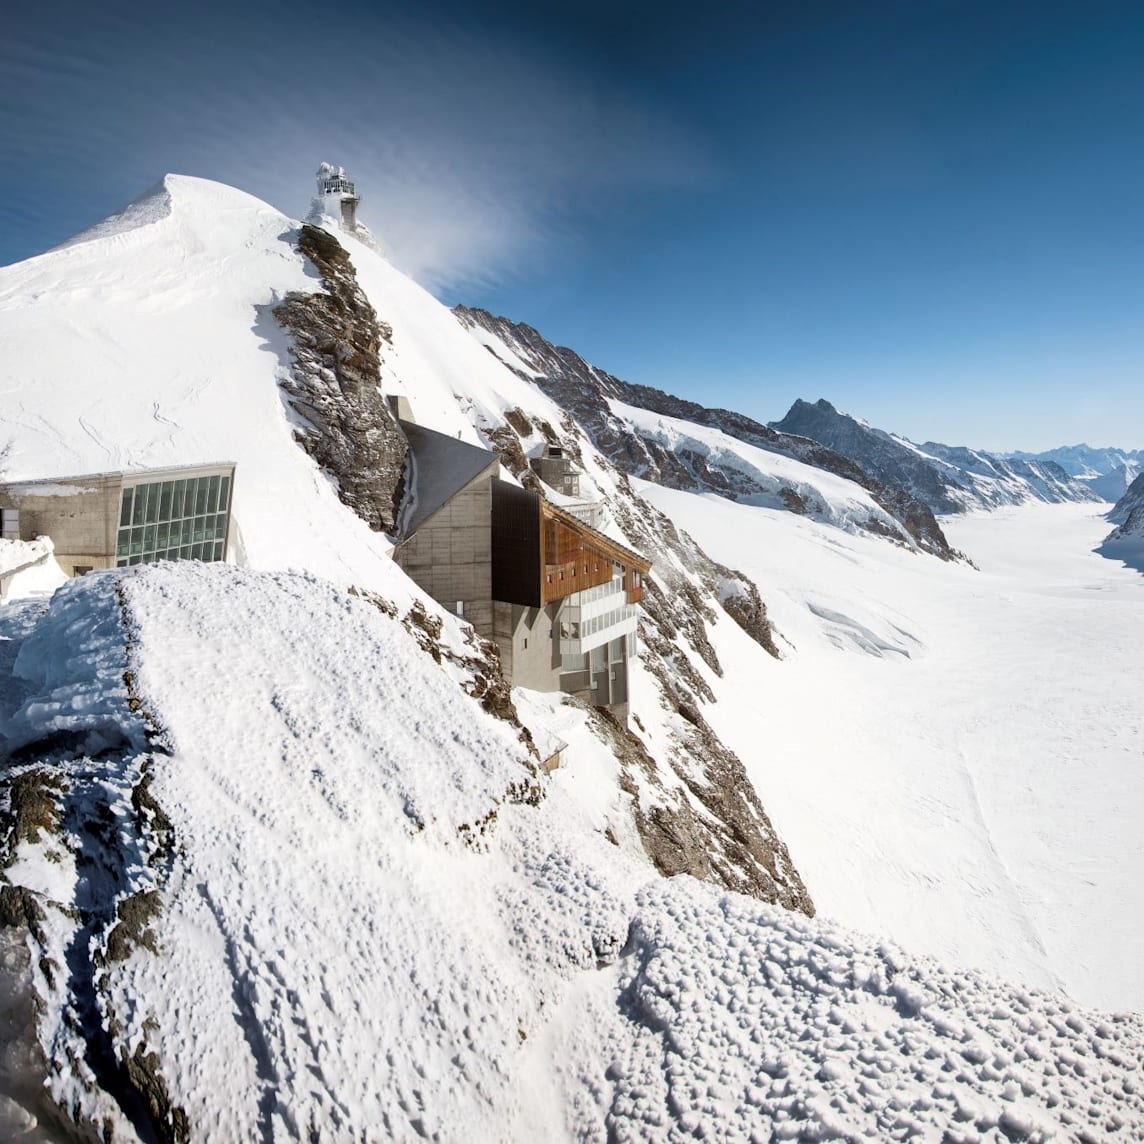 Berghaus aletschgletscher sphinx plateau jungfraujoch top of europe quadrat